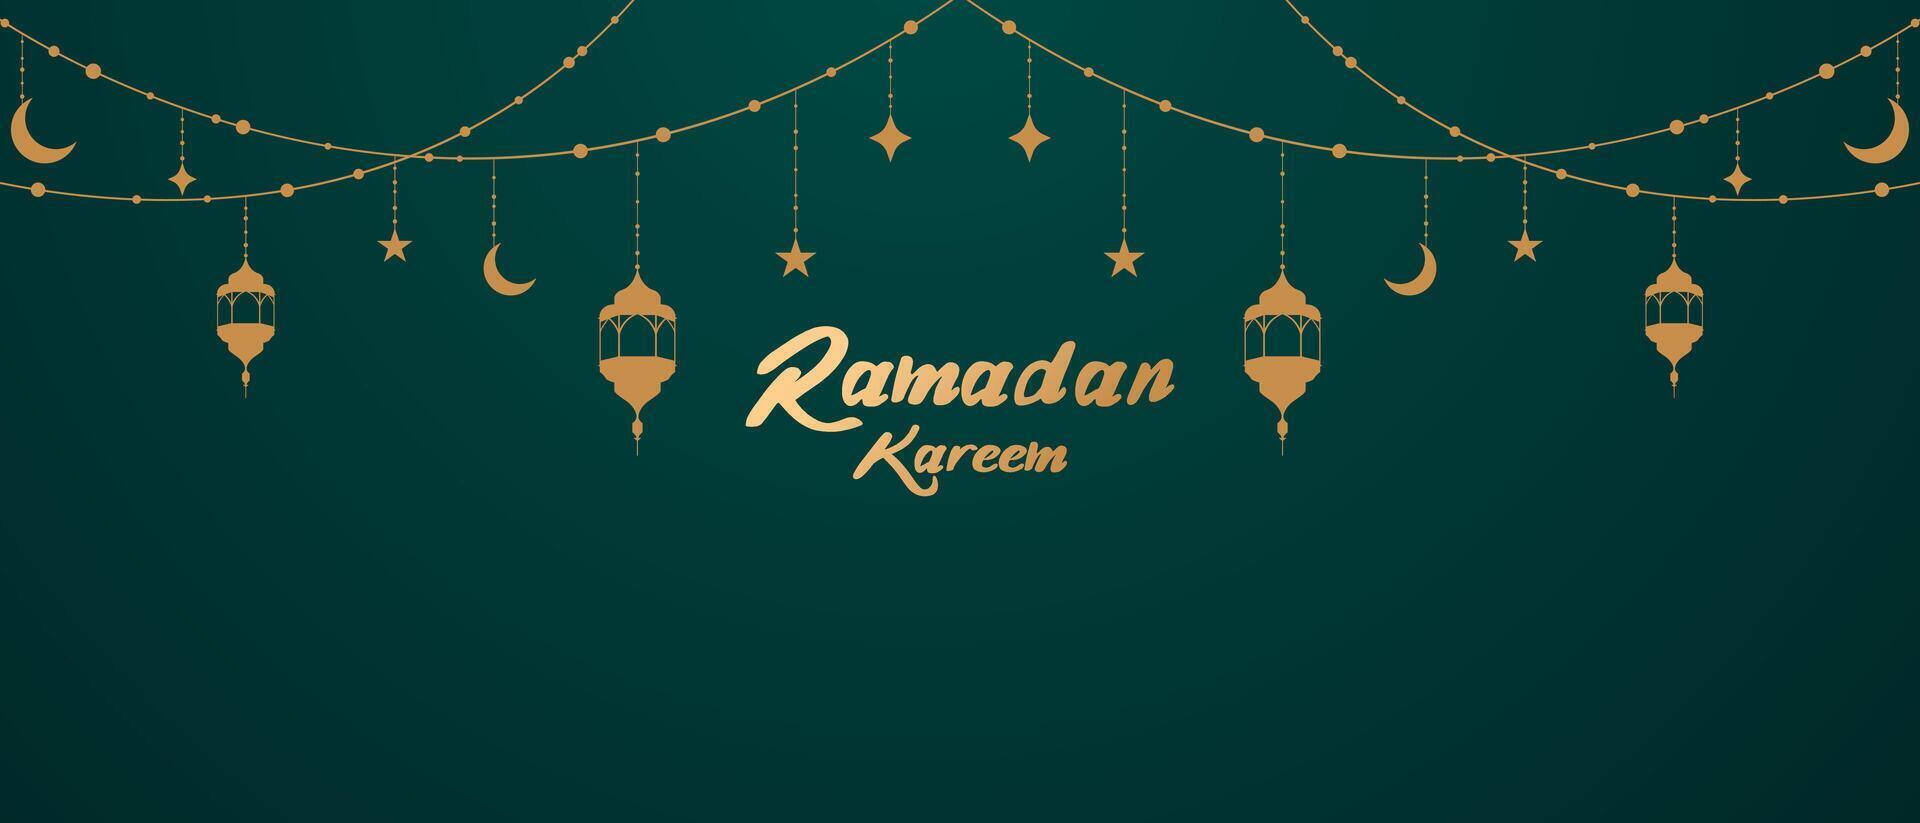 Ramadan kareem Islamitisch festival groet met mooi lantaarns versierd ontwerp vector illustratie